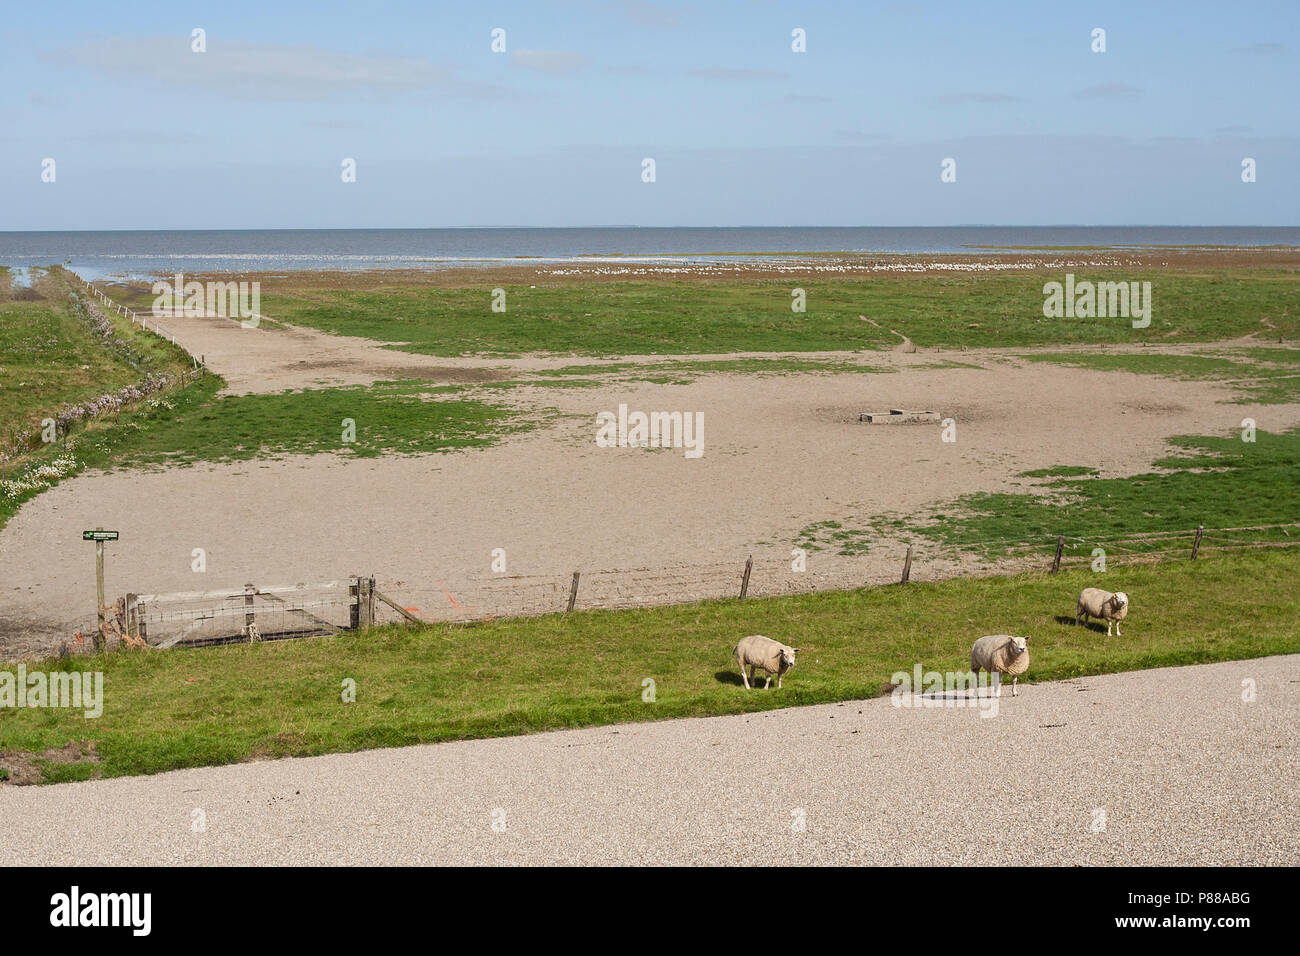 Zicht op de kust dans le Westhoek rencontré schapen en vogels ; voir à la côte ouest de la Belgique avec des moutons et des oiseaux Banque D'Images